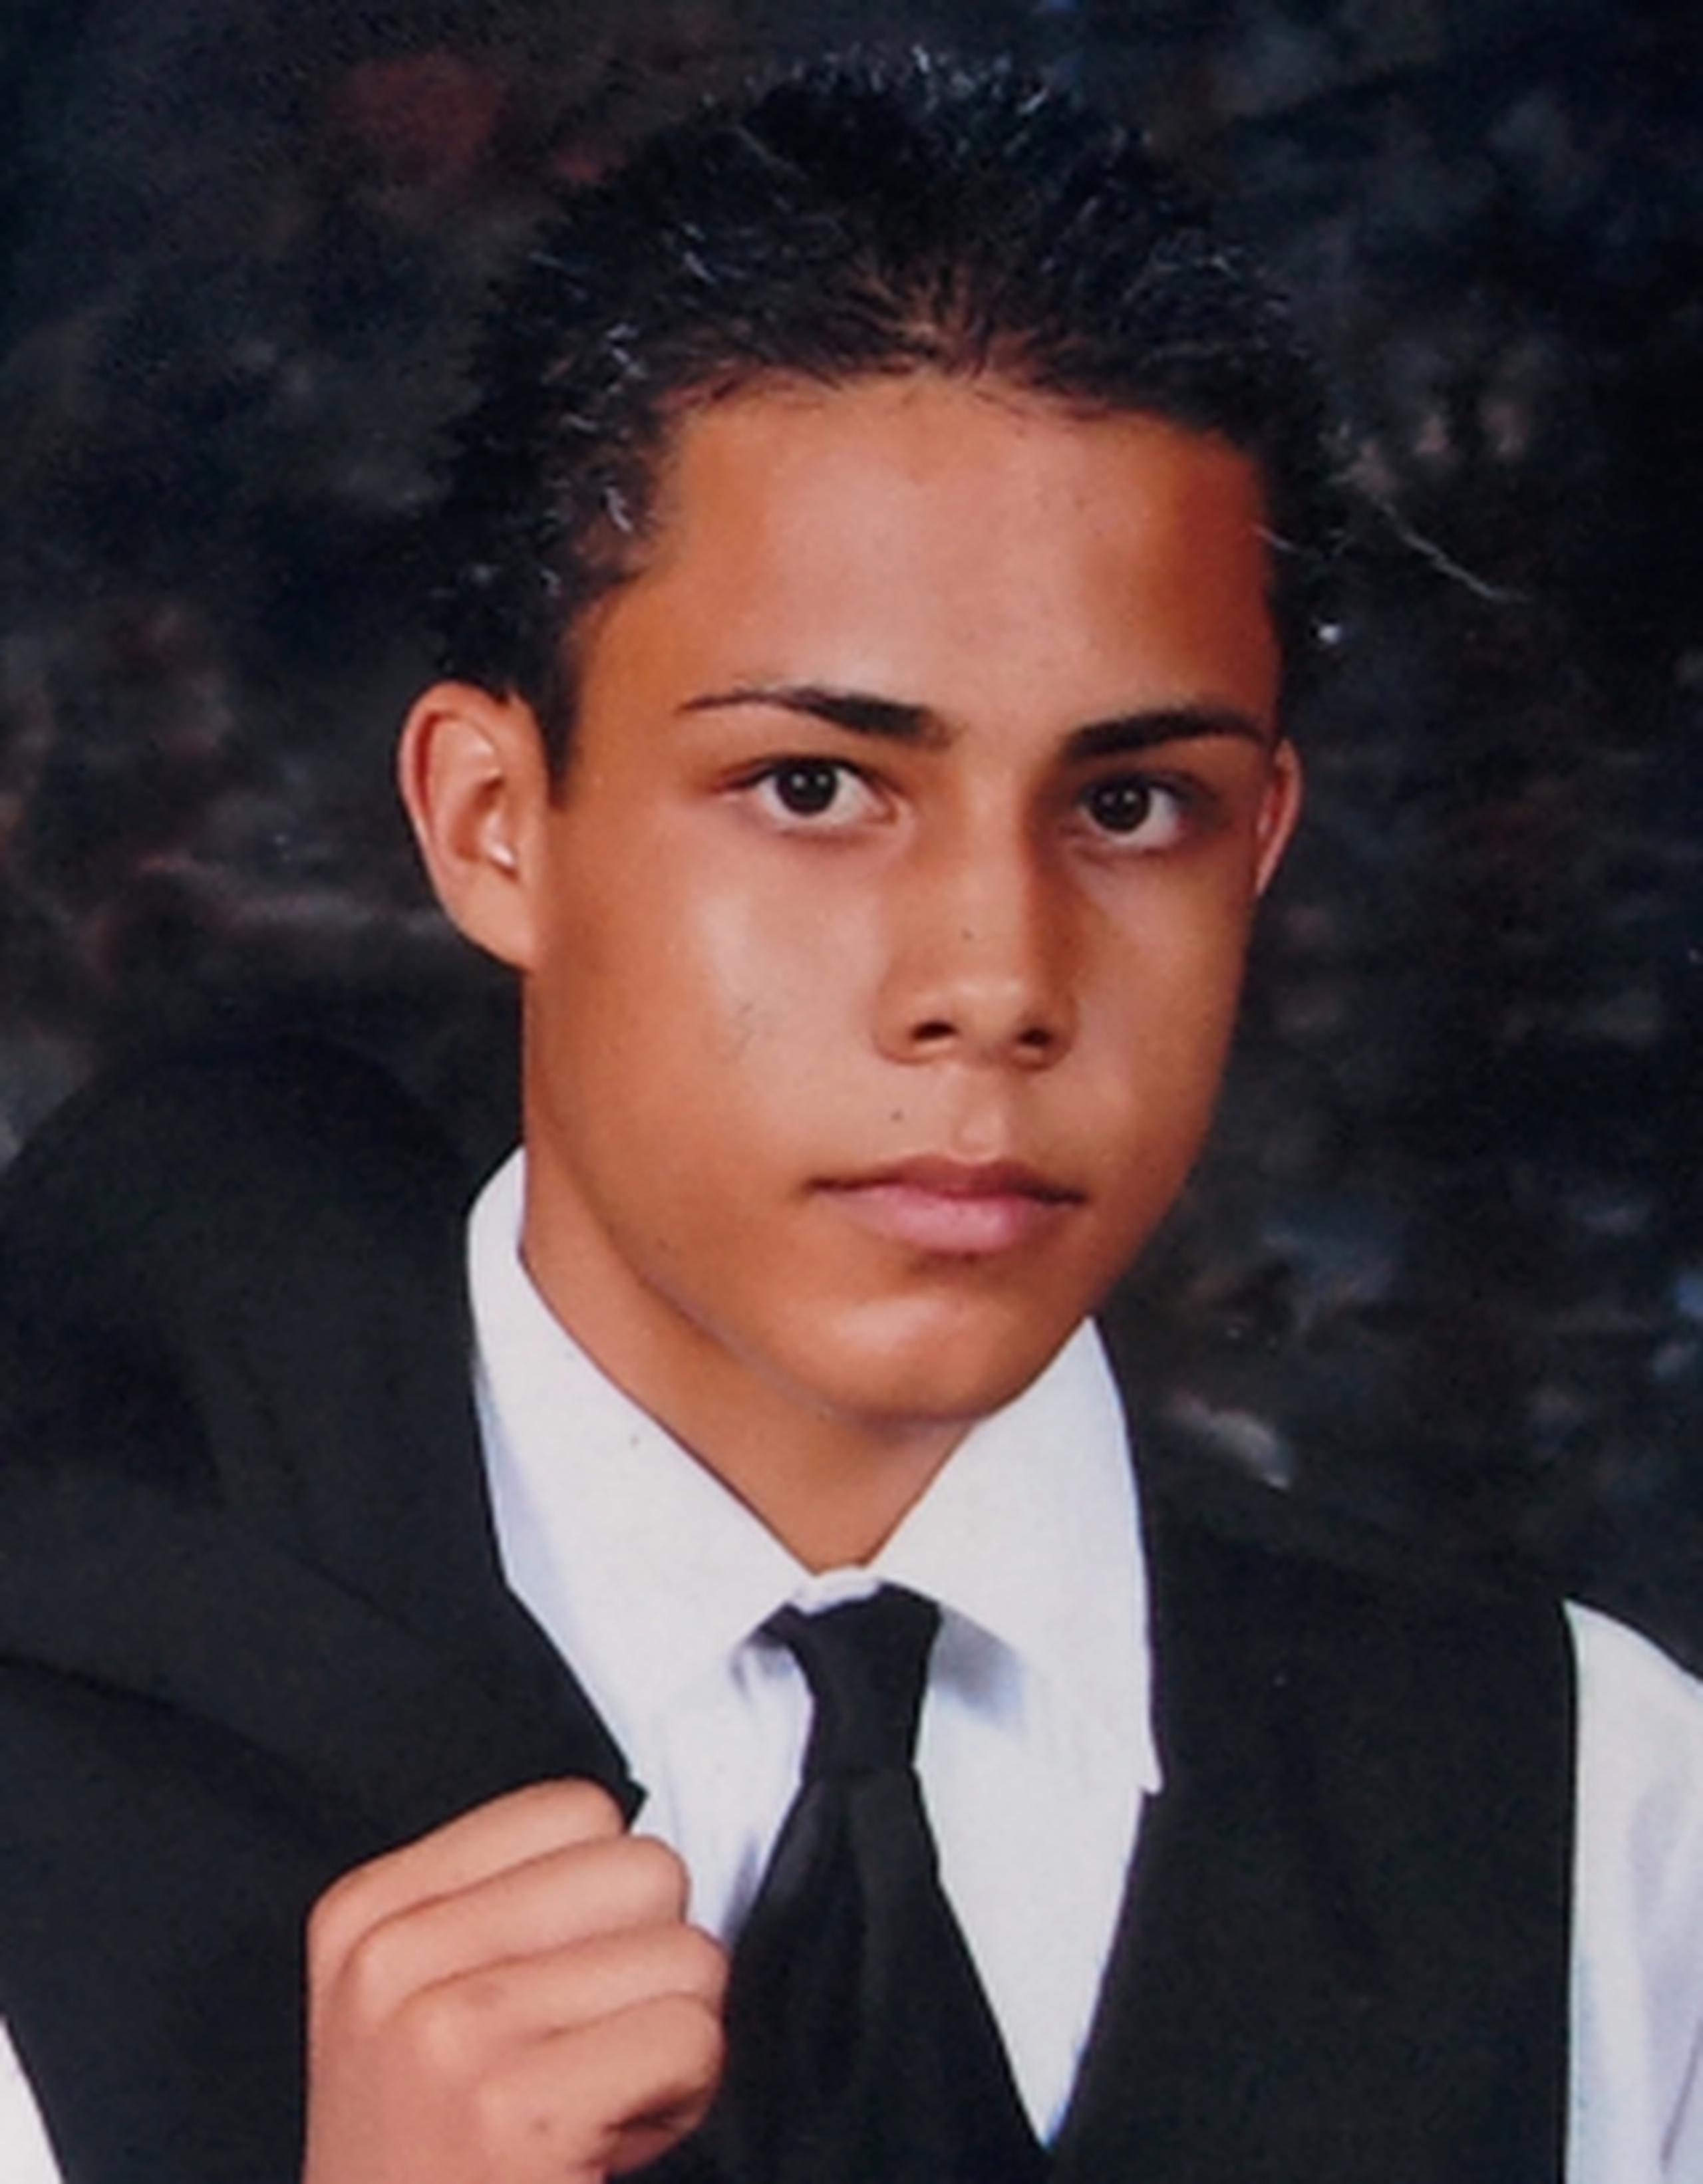 El pequeño fue identificado como Joshua Santiago Gonzalez, de 12 años, mientras que el conductor fue identificado como Jonathan Fabián Santiago González, de 18. (Suministrada)